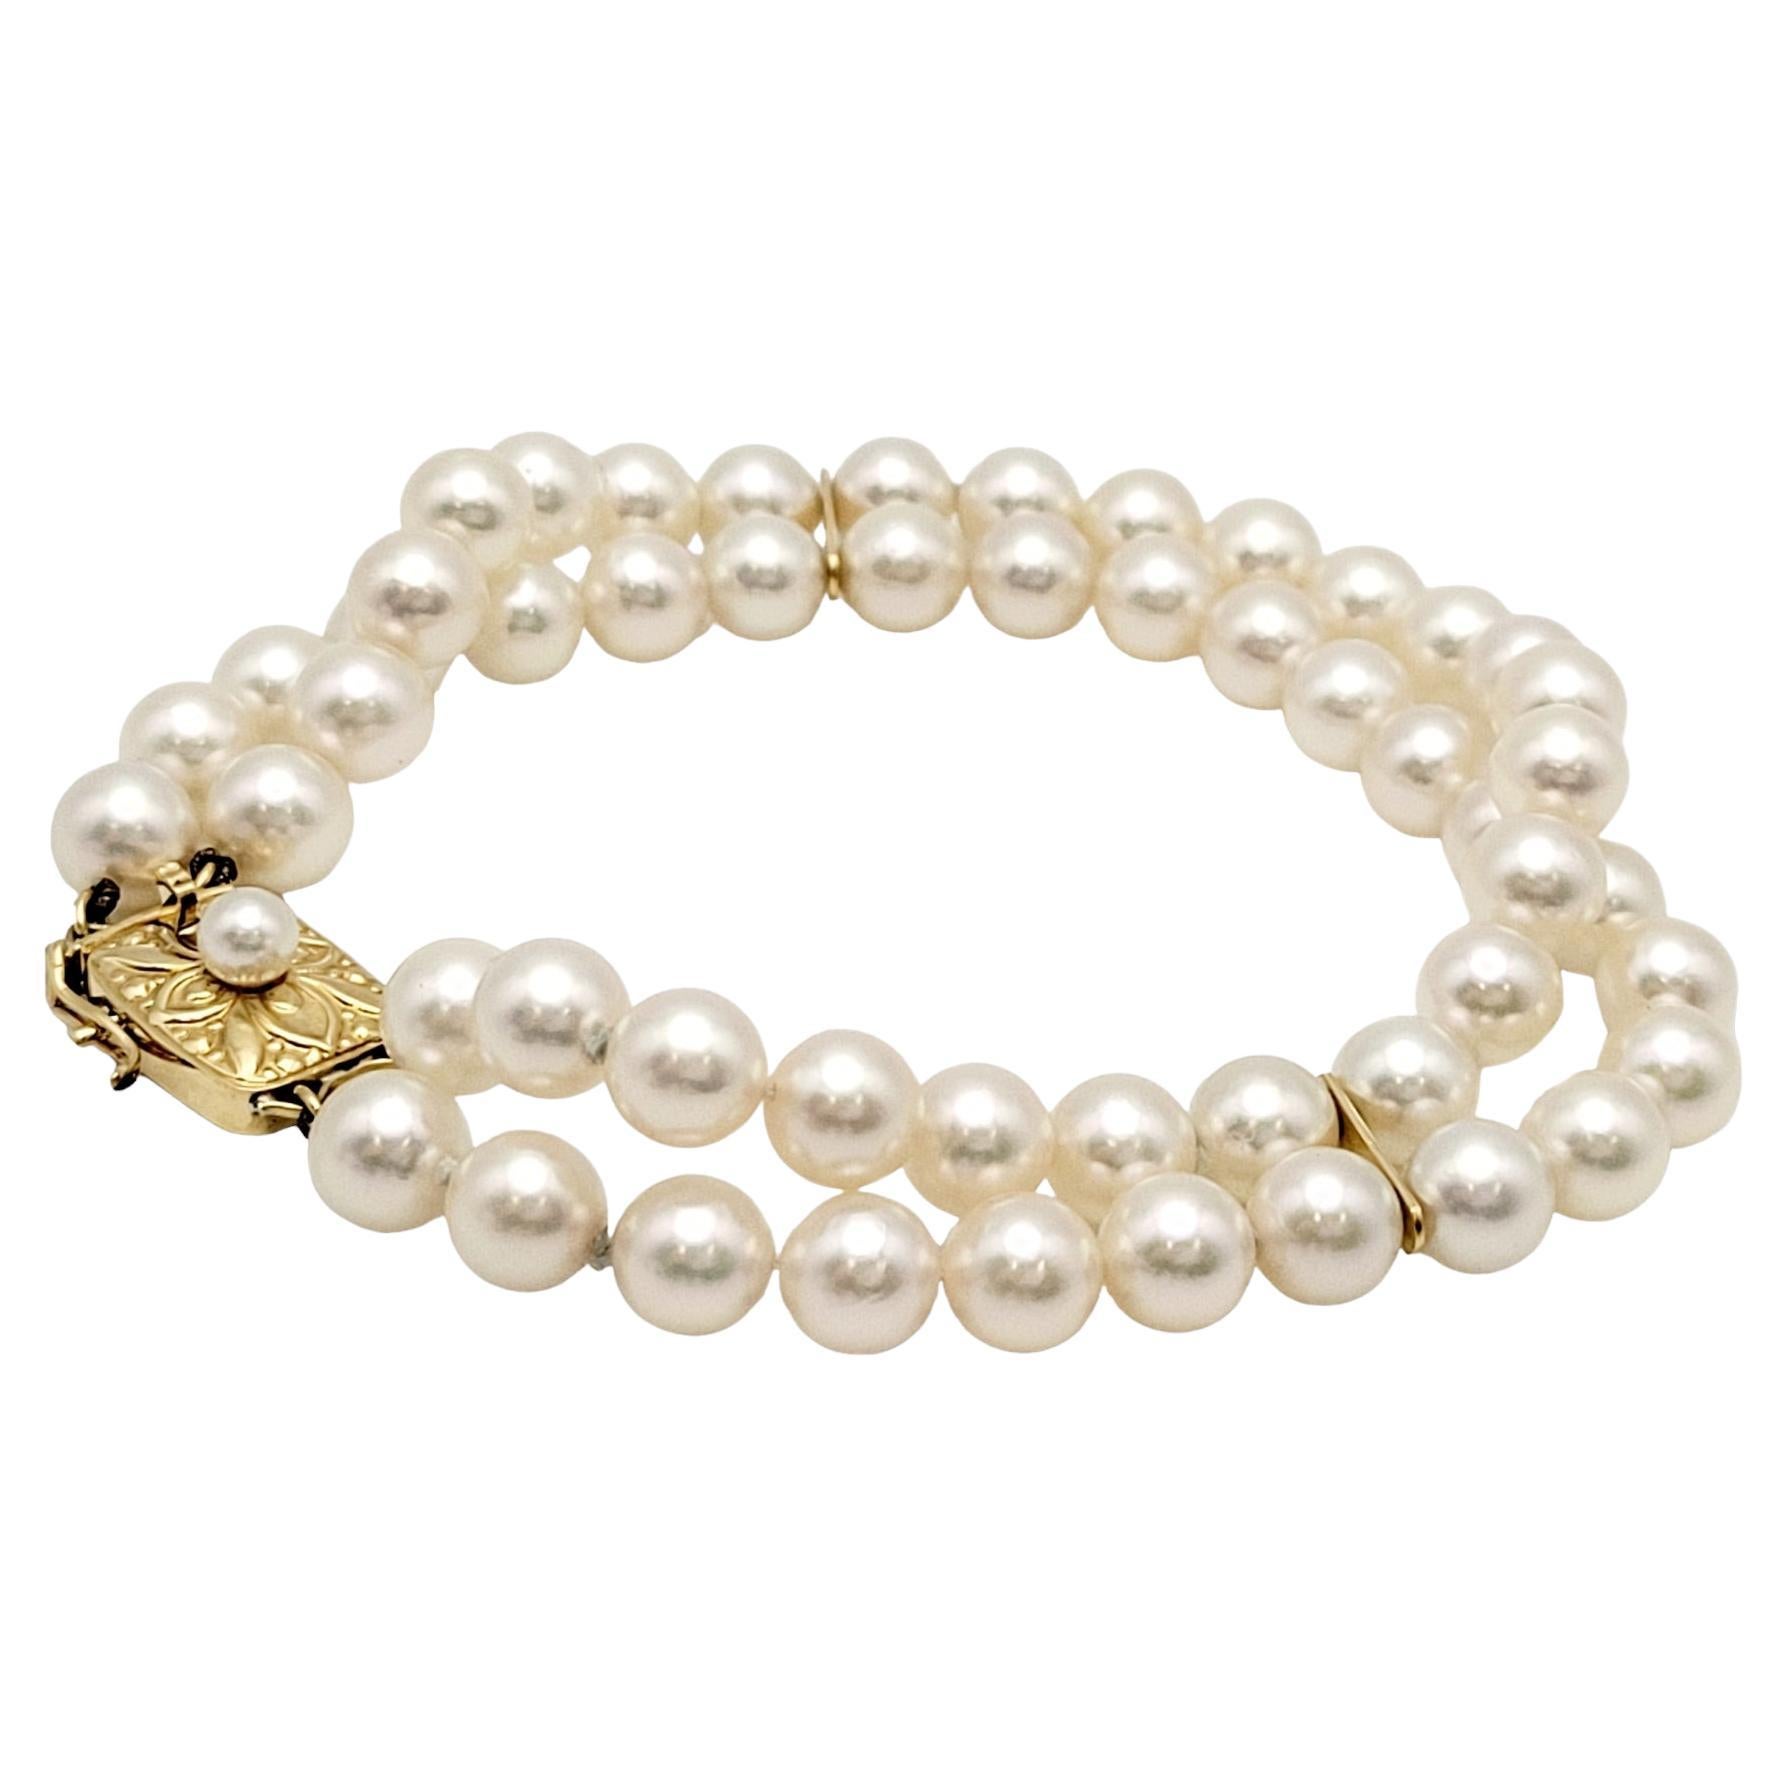 Dieses zeitlose Armband zeigt eine harmonische Verschmelzung von klassischen Perlen und opulentem 18-karätigem Gelbgold. Das Armband besteht aus einem doppelten Strang glänzender Perlen, von denen jede einzelne sorgfältig wegen ihres strahlenden